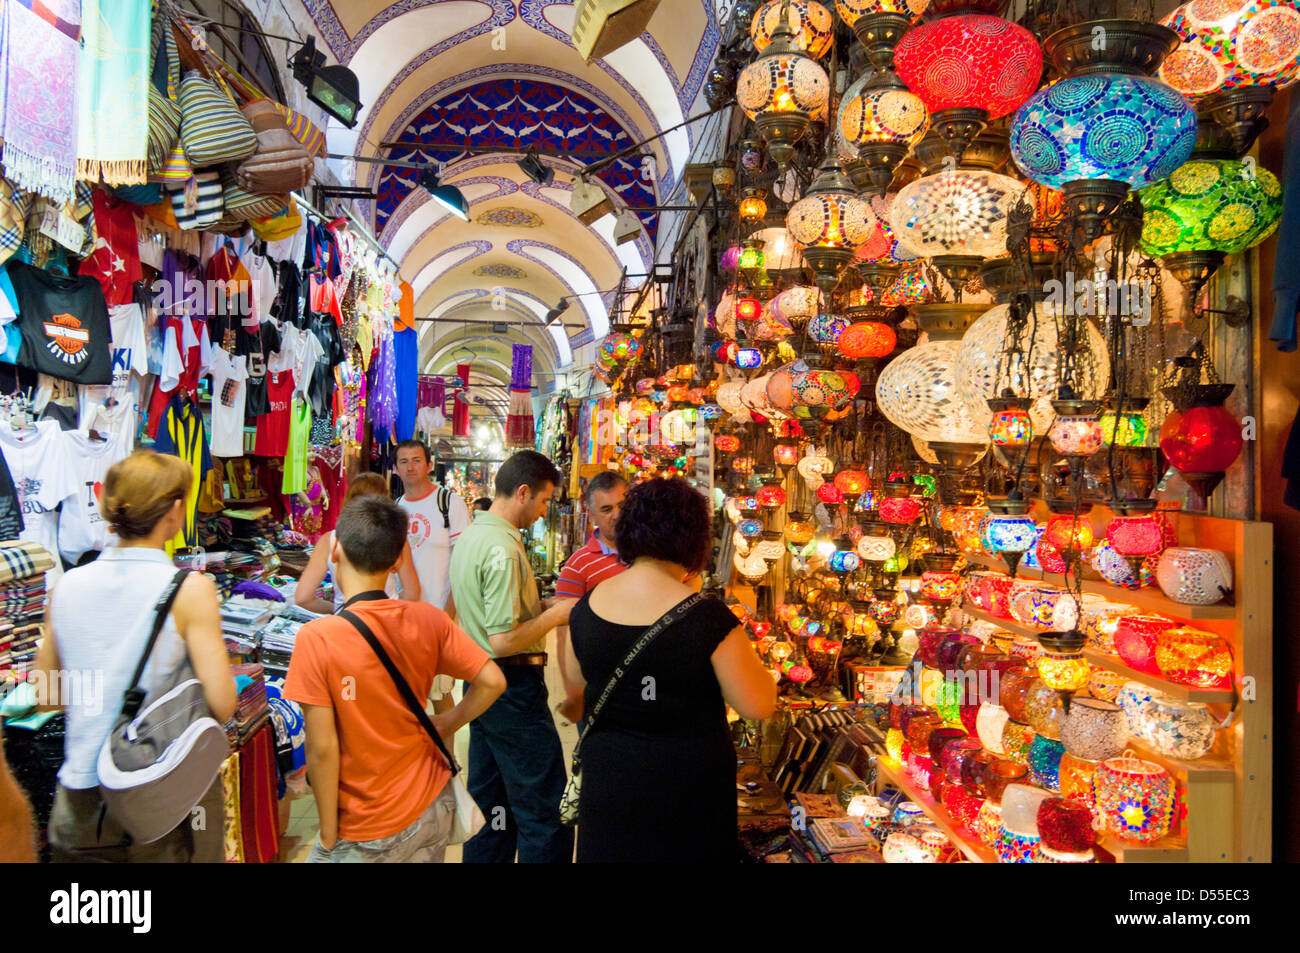 Touristen, die Geschäfte im großen Basar Kapali Carsi, Sultanahmet, Istanbul, Türkei Stockfoto